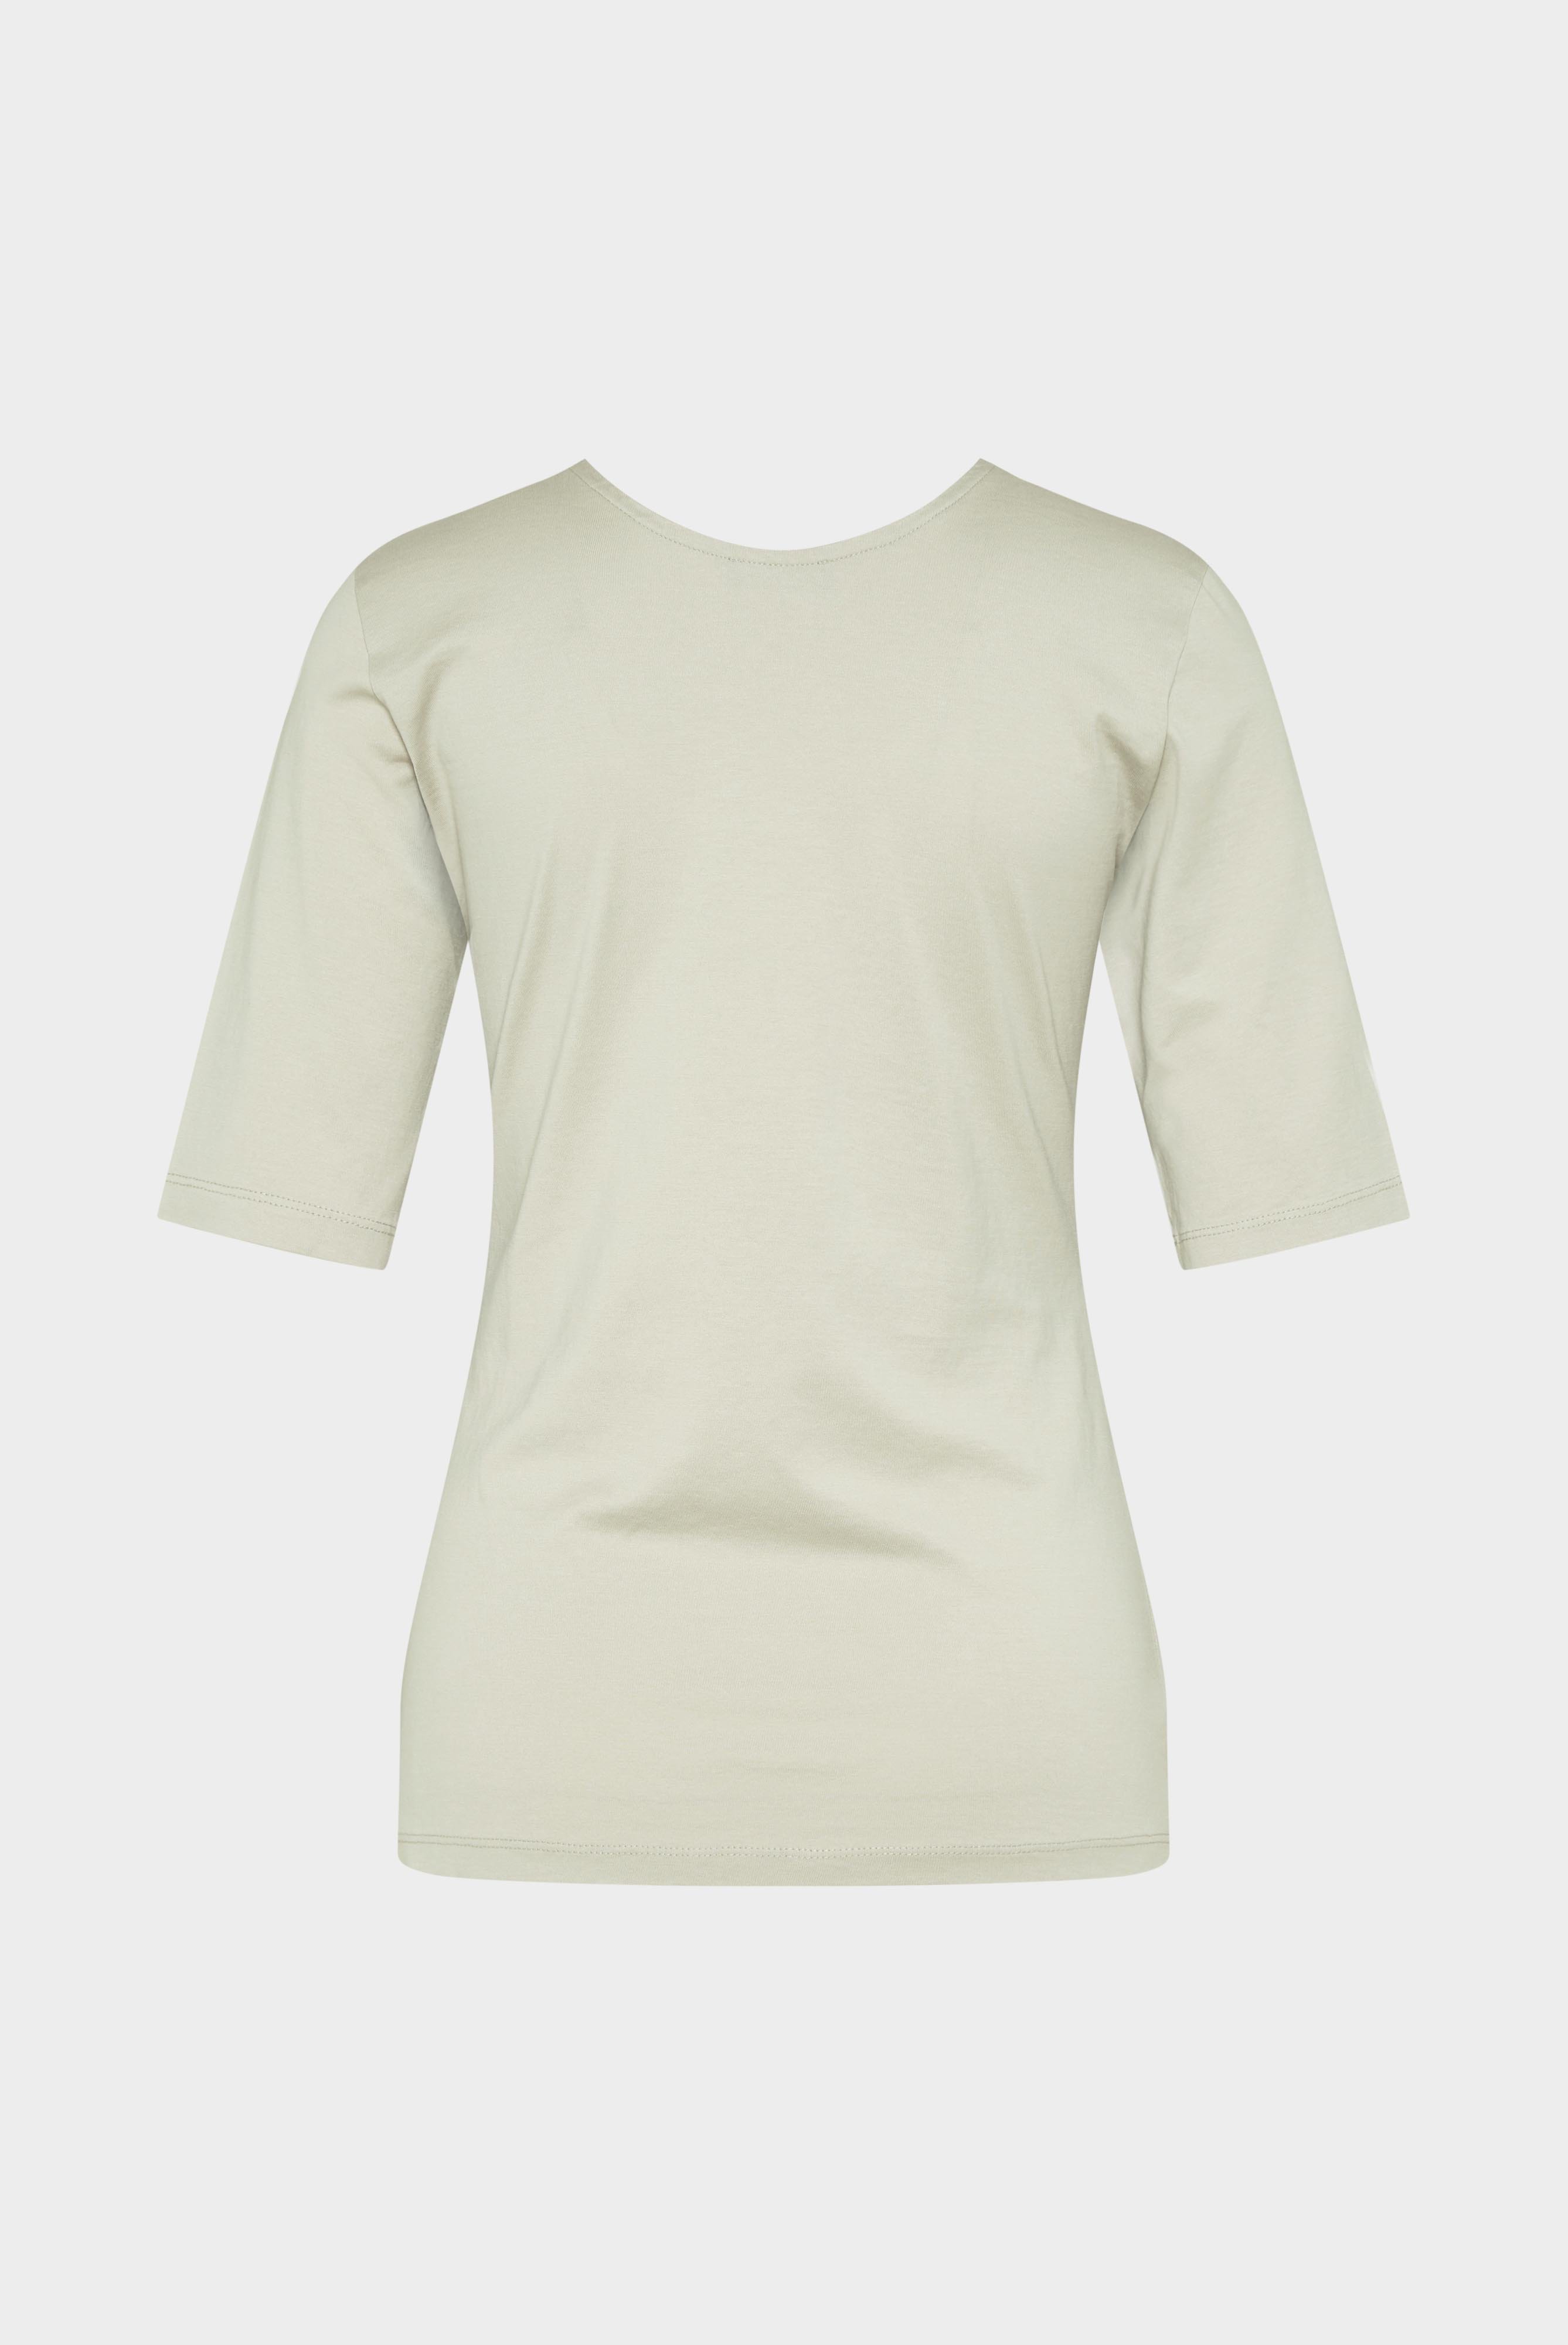 Tops & T-Shirts+Urban Jersey Wide Neck T-Shirt+05.2911..Z20044.120.XL